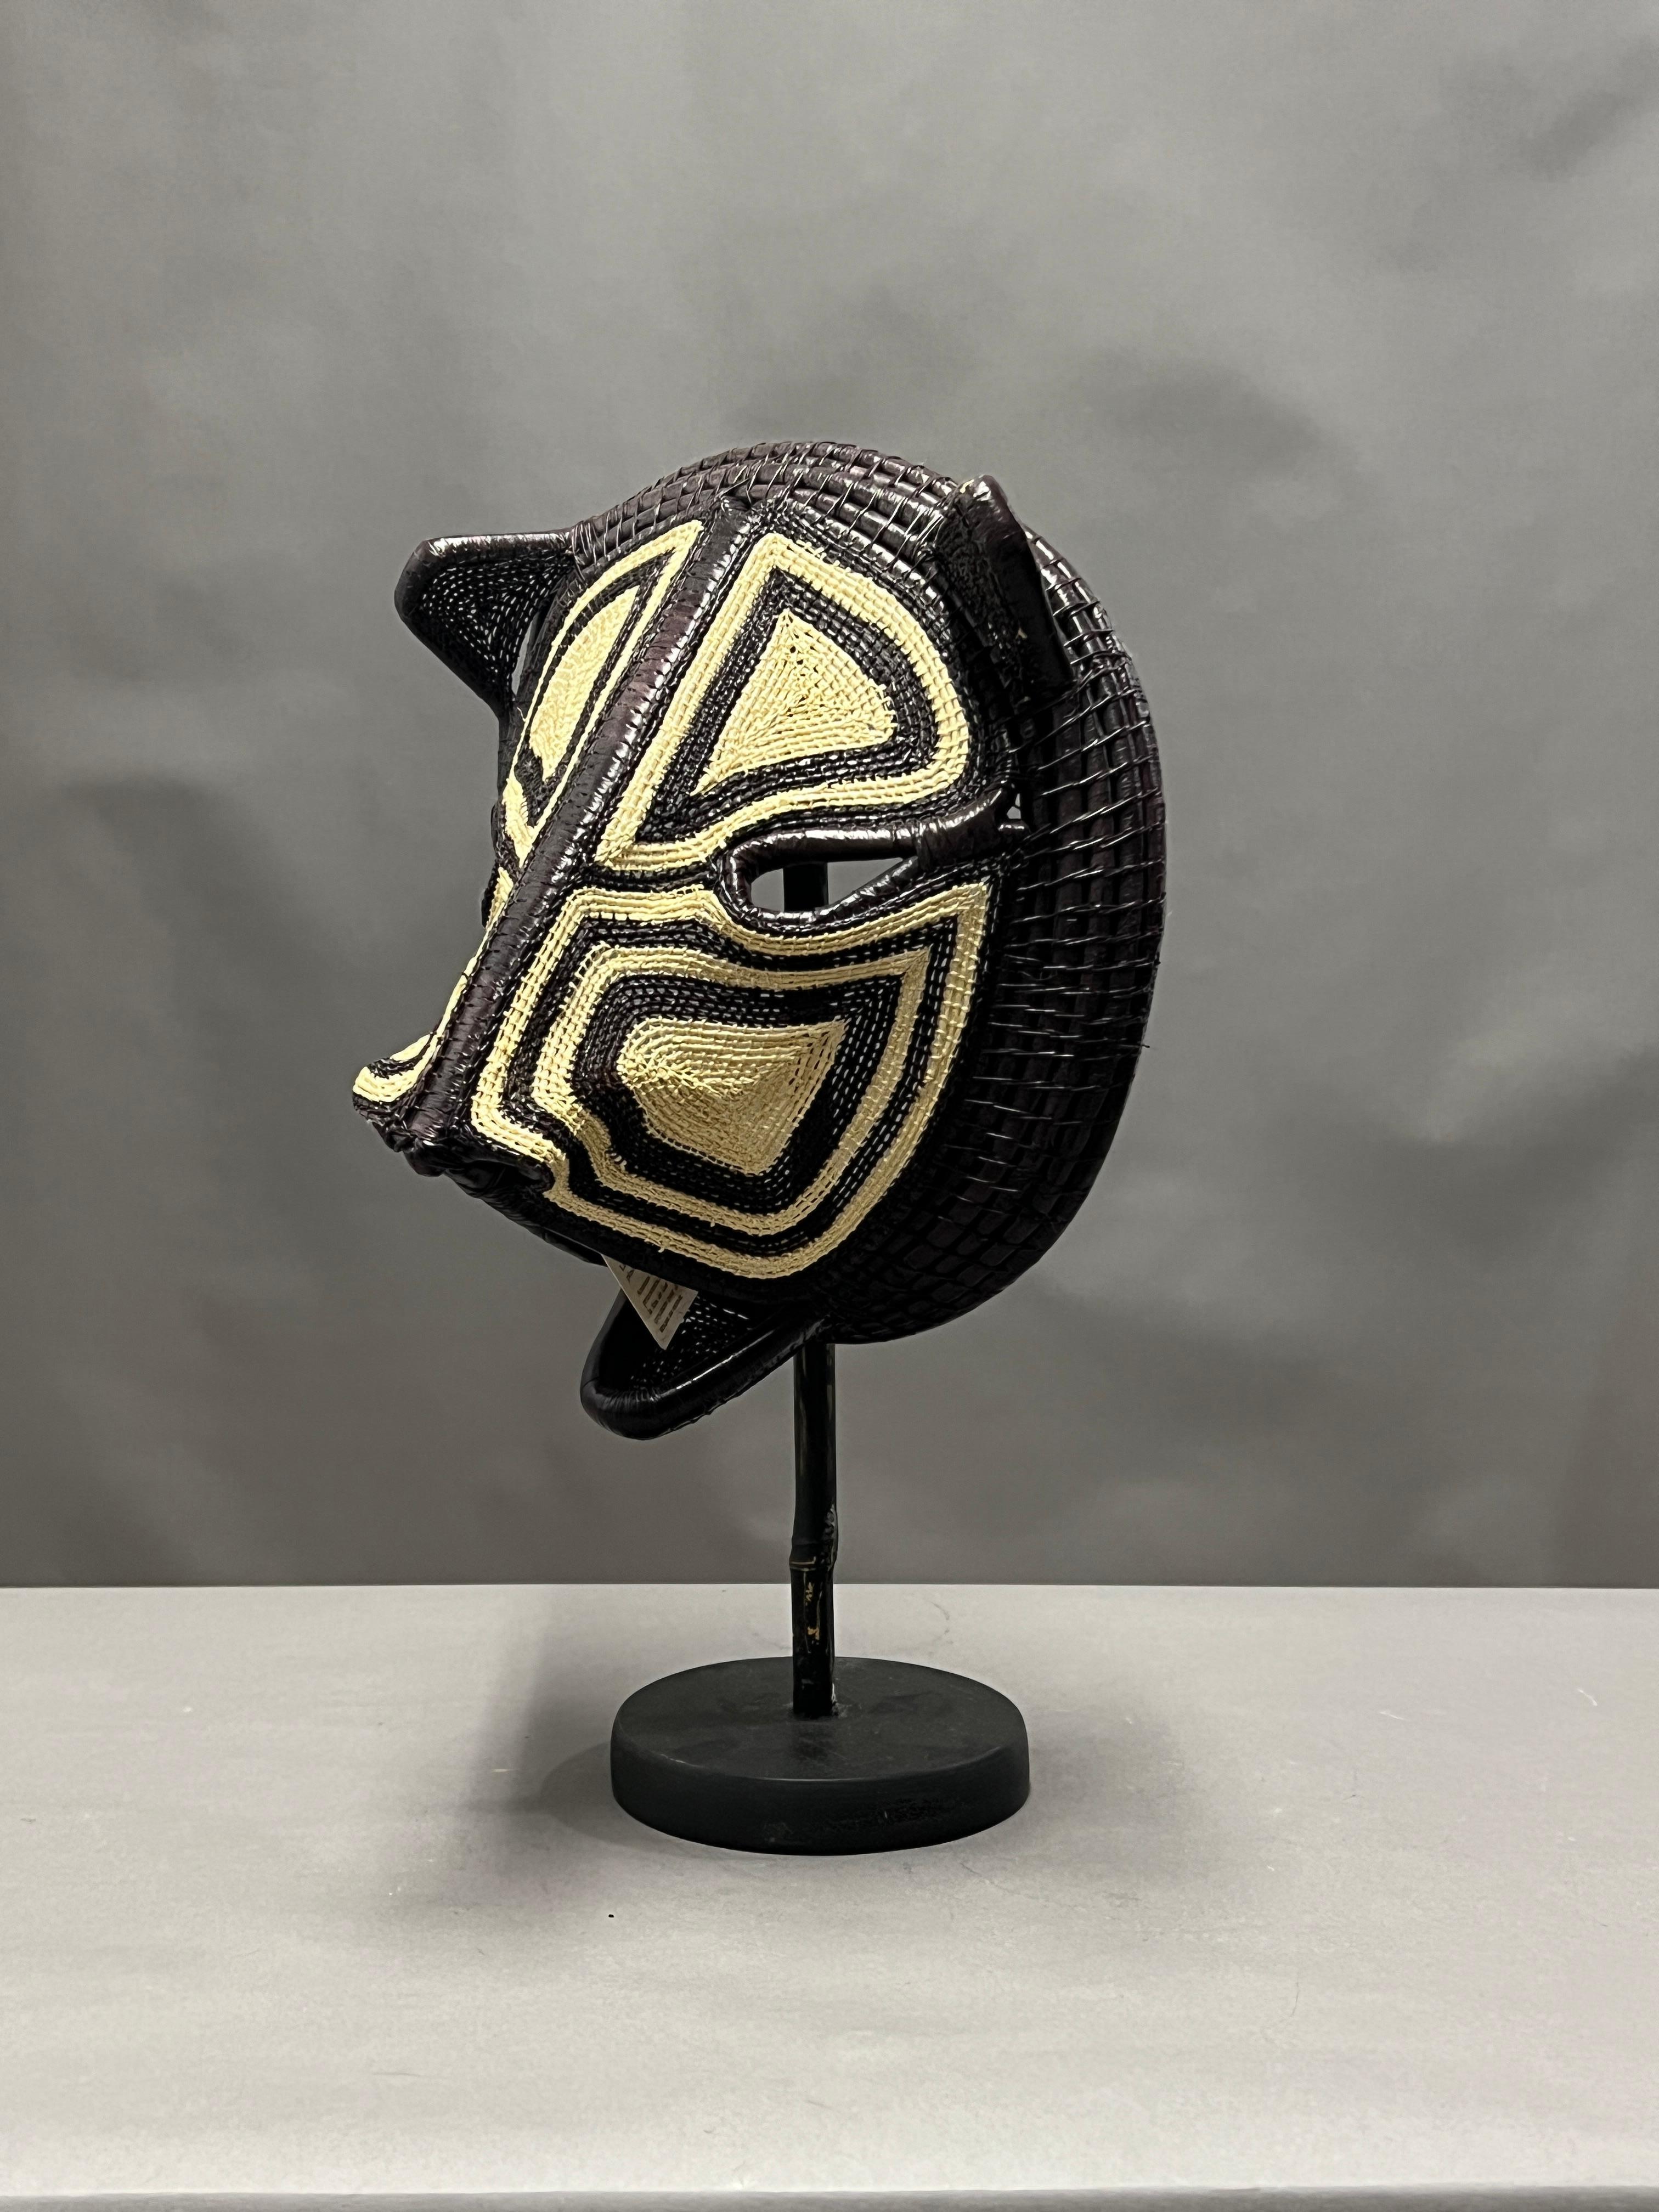 Diese Maske ist ein außergewöhnliches Kunst- und Dekorationsobjekt, das aus dem schamanischen Glauben und den Ritualen der mittelamerikanischen Stämme stammt.
Die indigenen Völker teilen die Welt in zwei Teile, eine sichtbare und eine unsichtbare